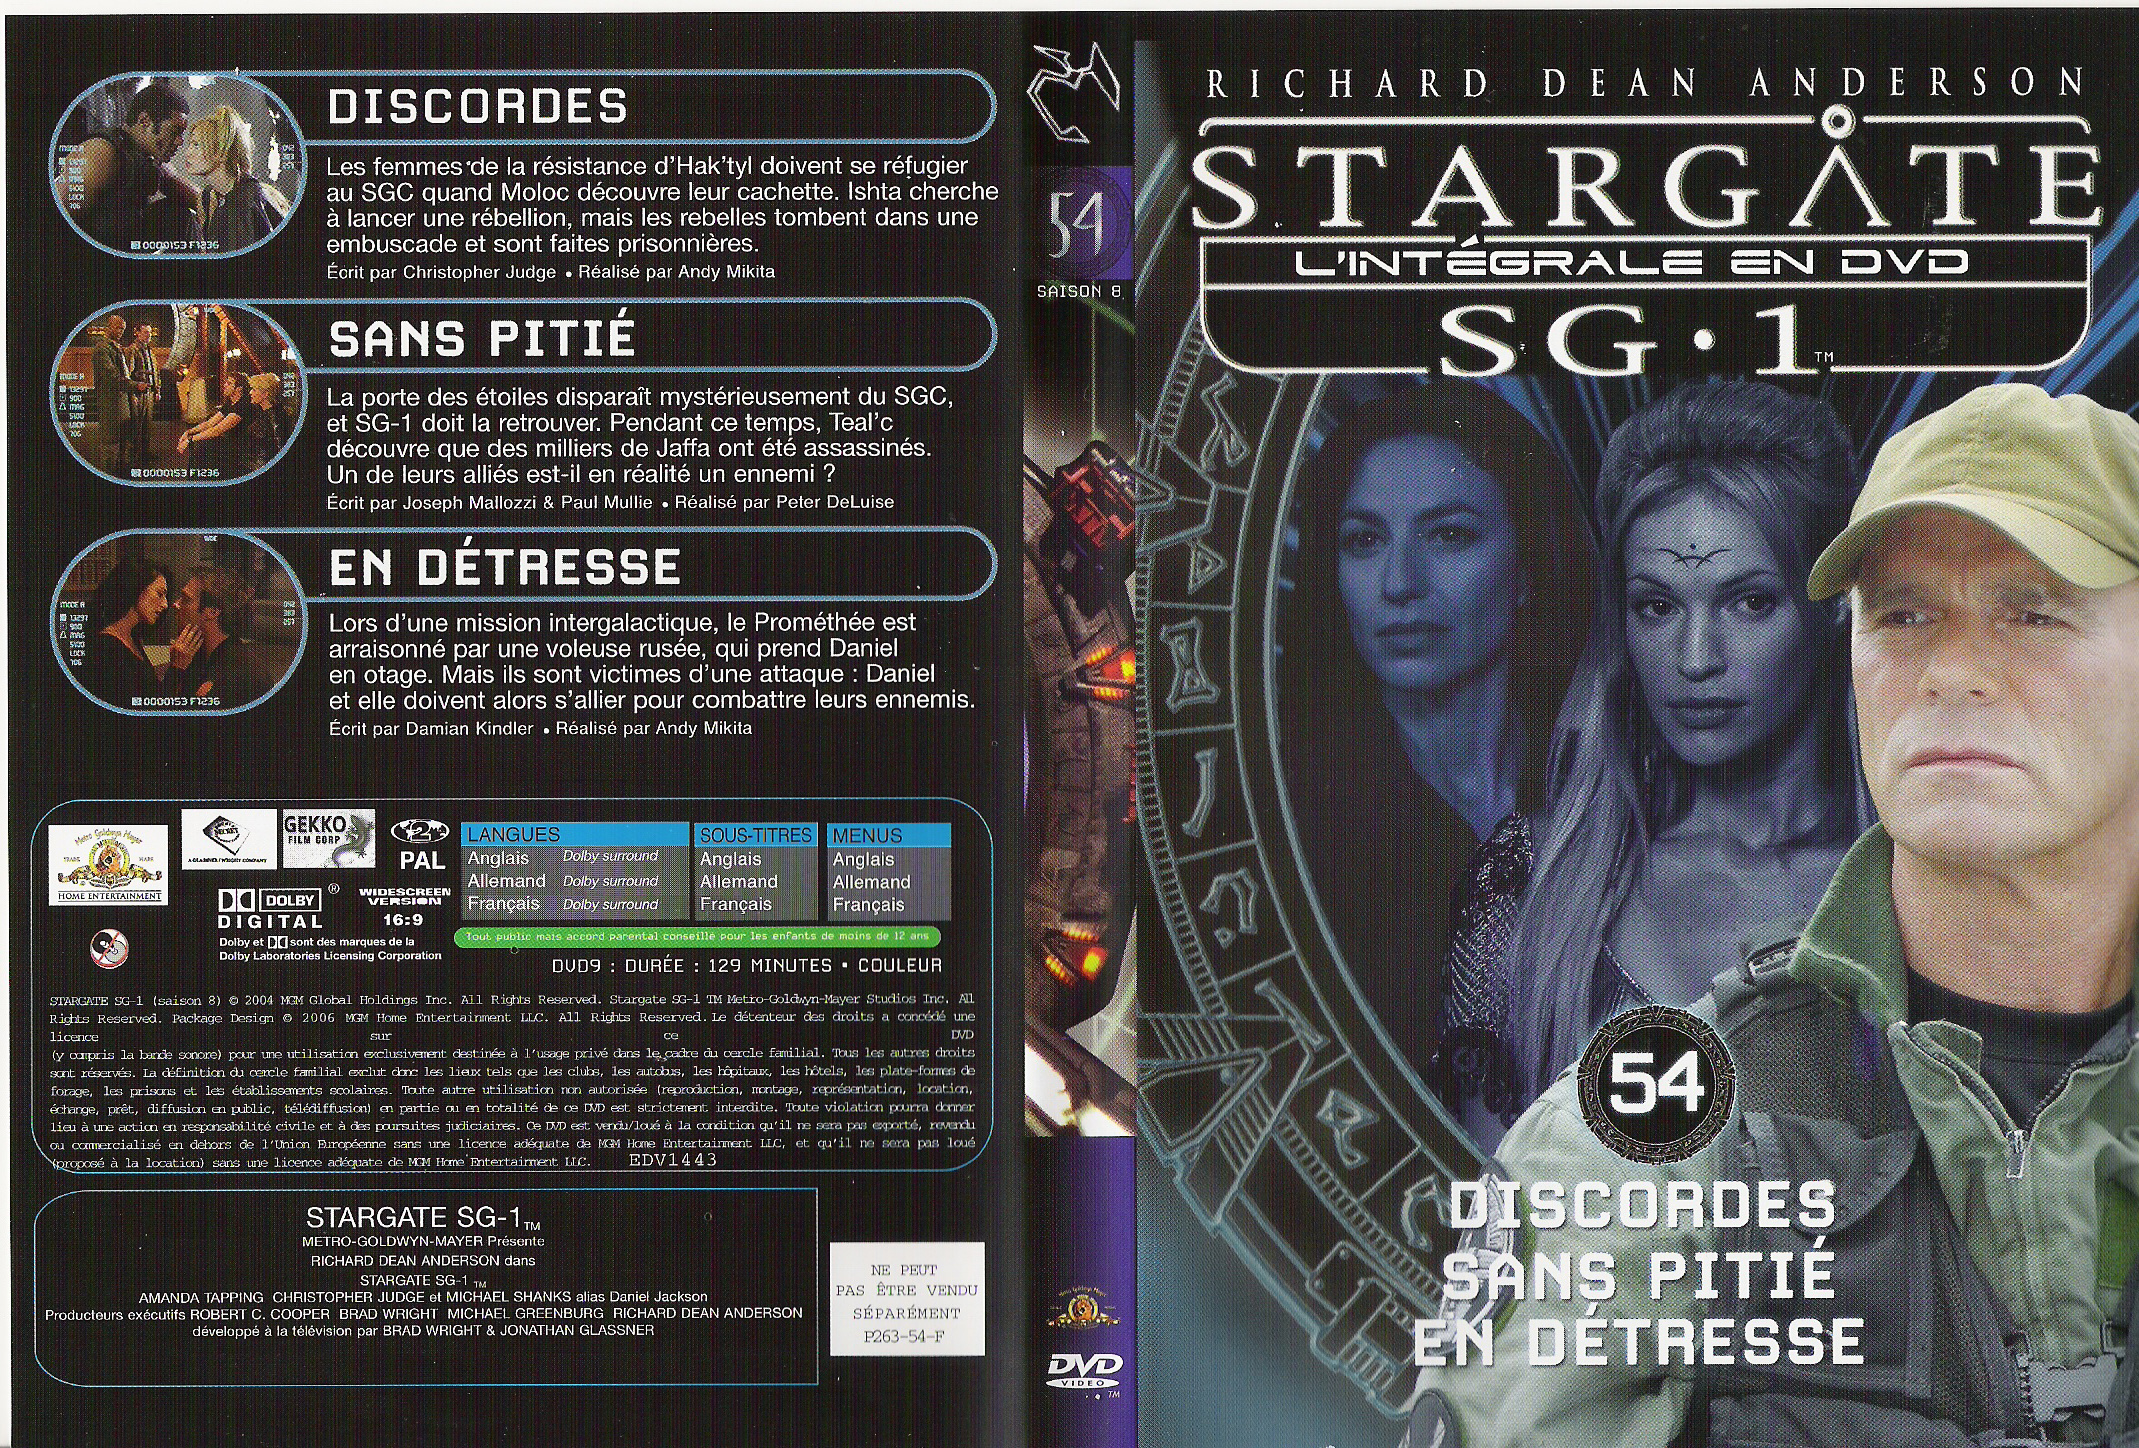 Jaquette DVD Stargate saison 8 vol 54